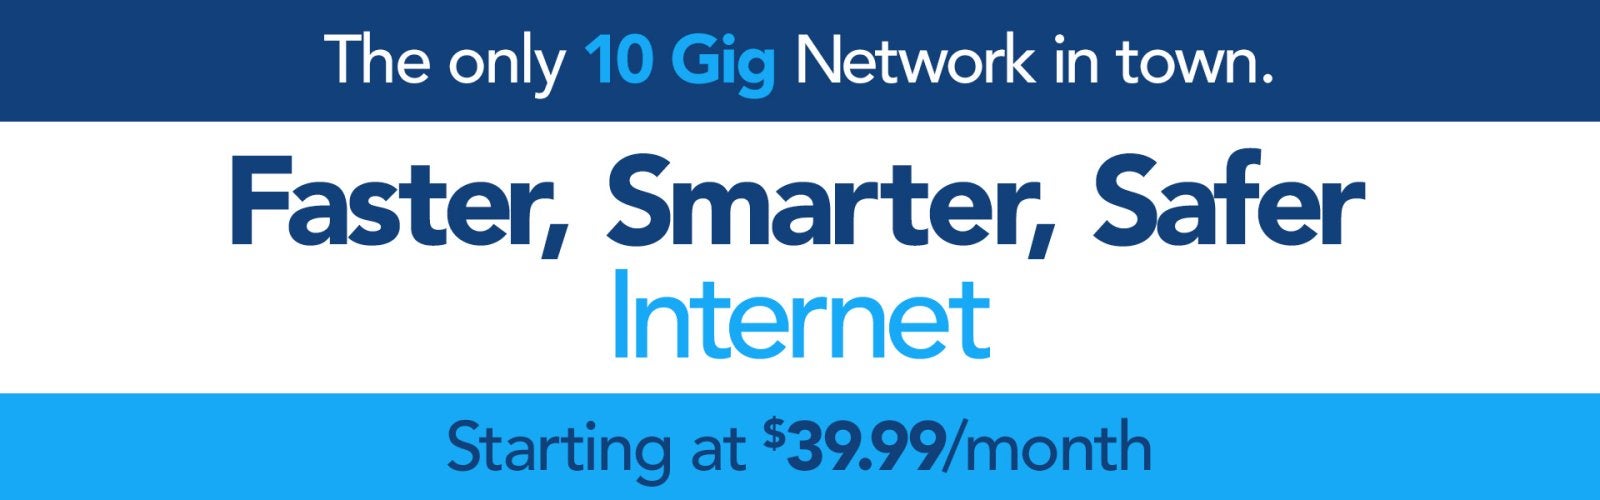 fiber internet, gig internet, fiber internet near me